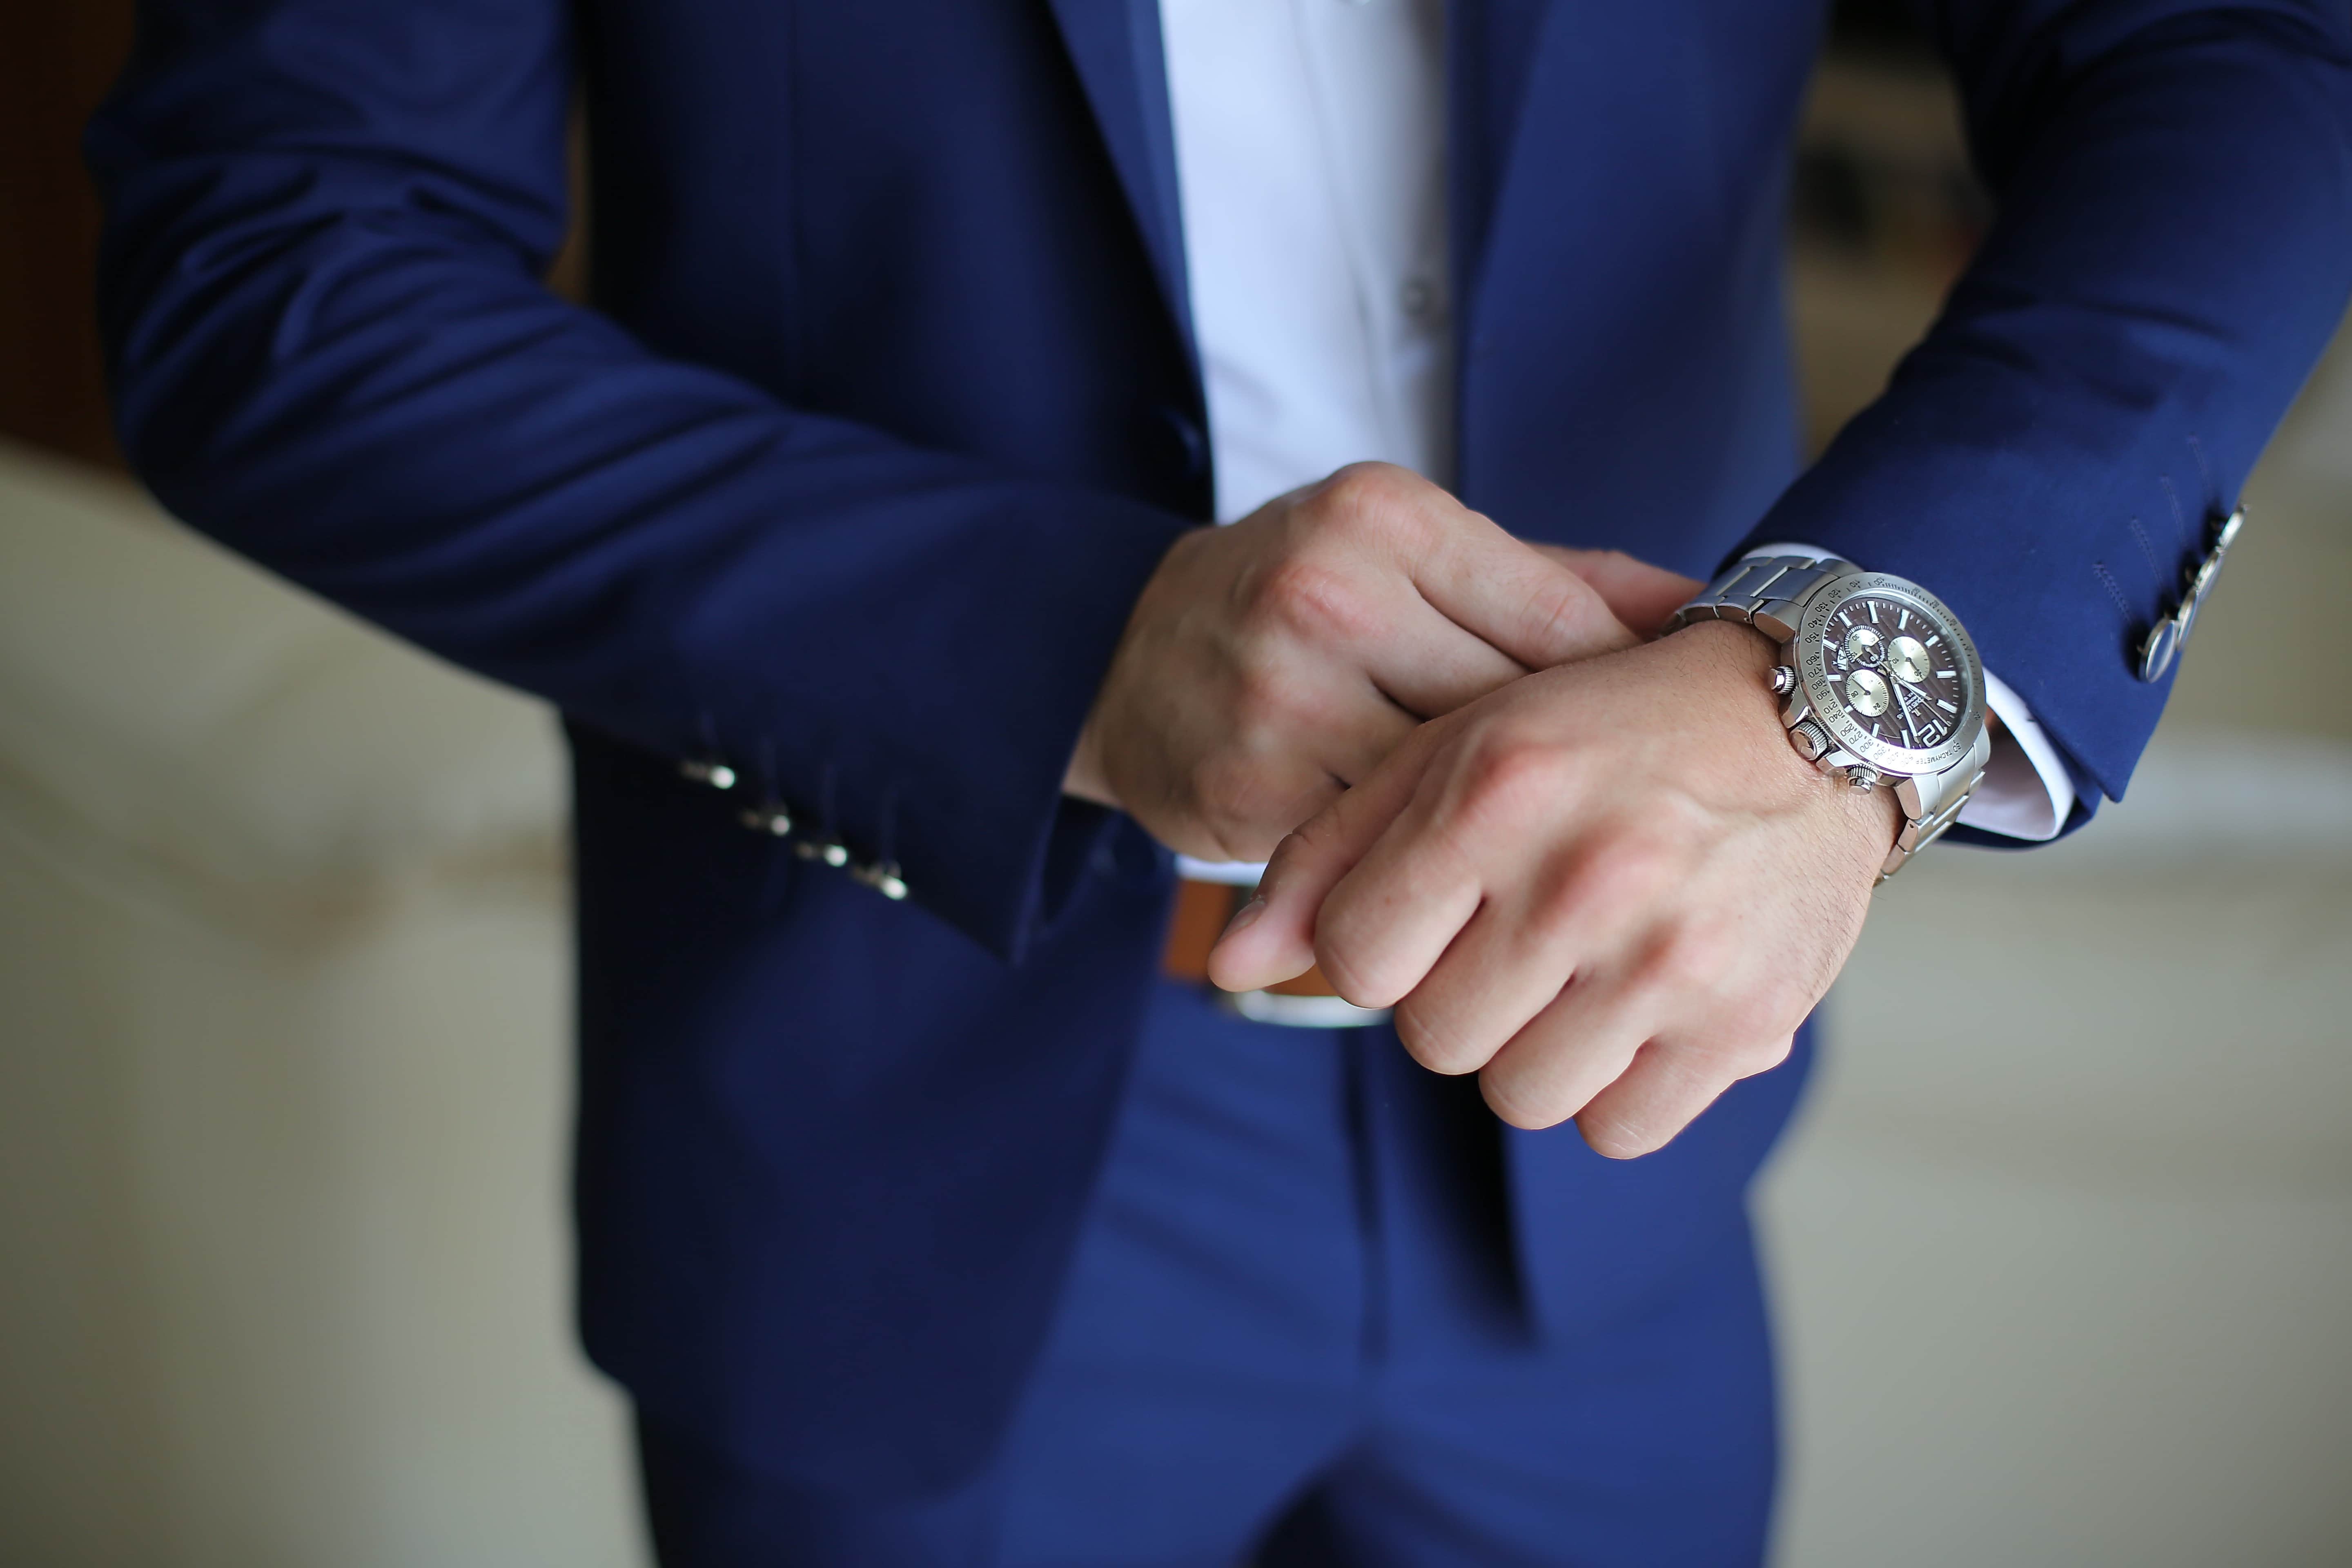 Час джентльмена. Часы на руке бизнесмена. Руки бизнесмена. Образ делового бизнесмена в рекламе часов. Вип часы для бизнесменов.